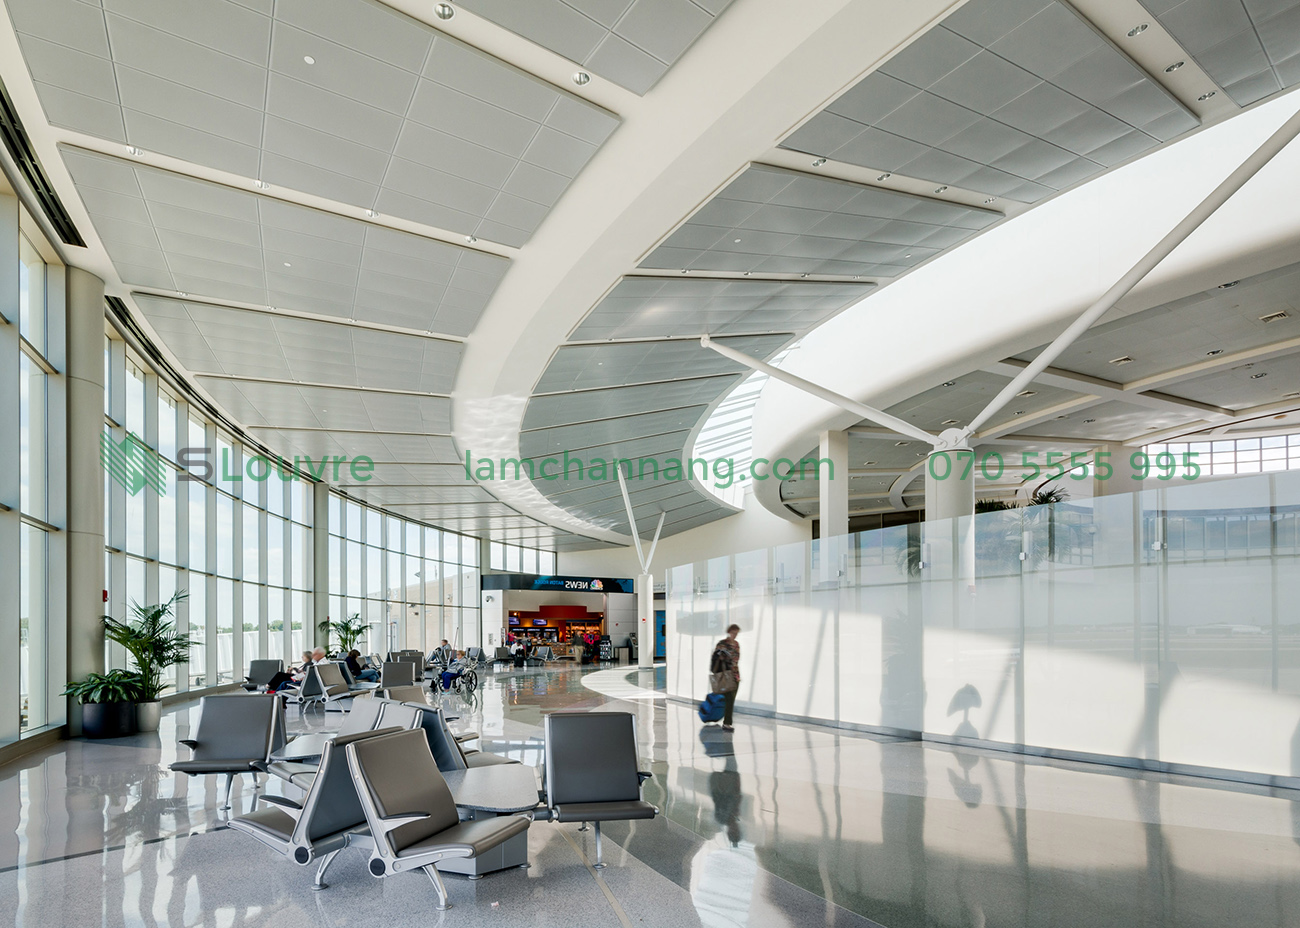 tran-nhom-san-bay-airport-aluminium-ceiling-3